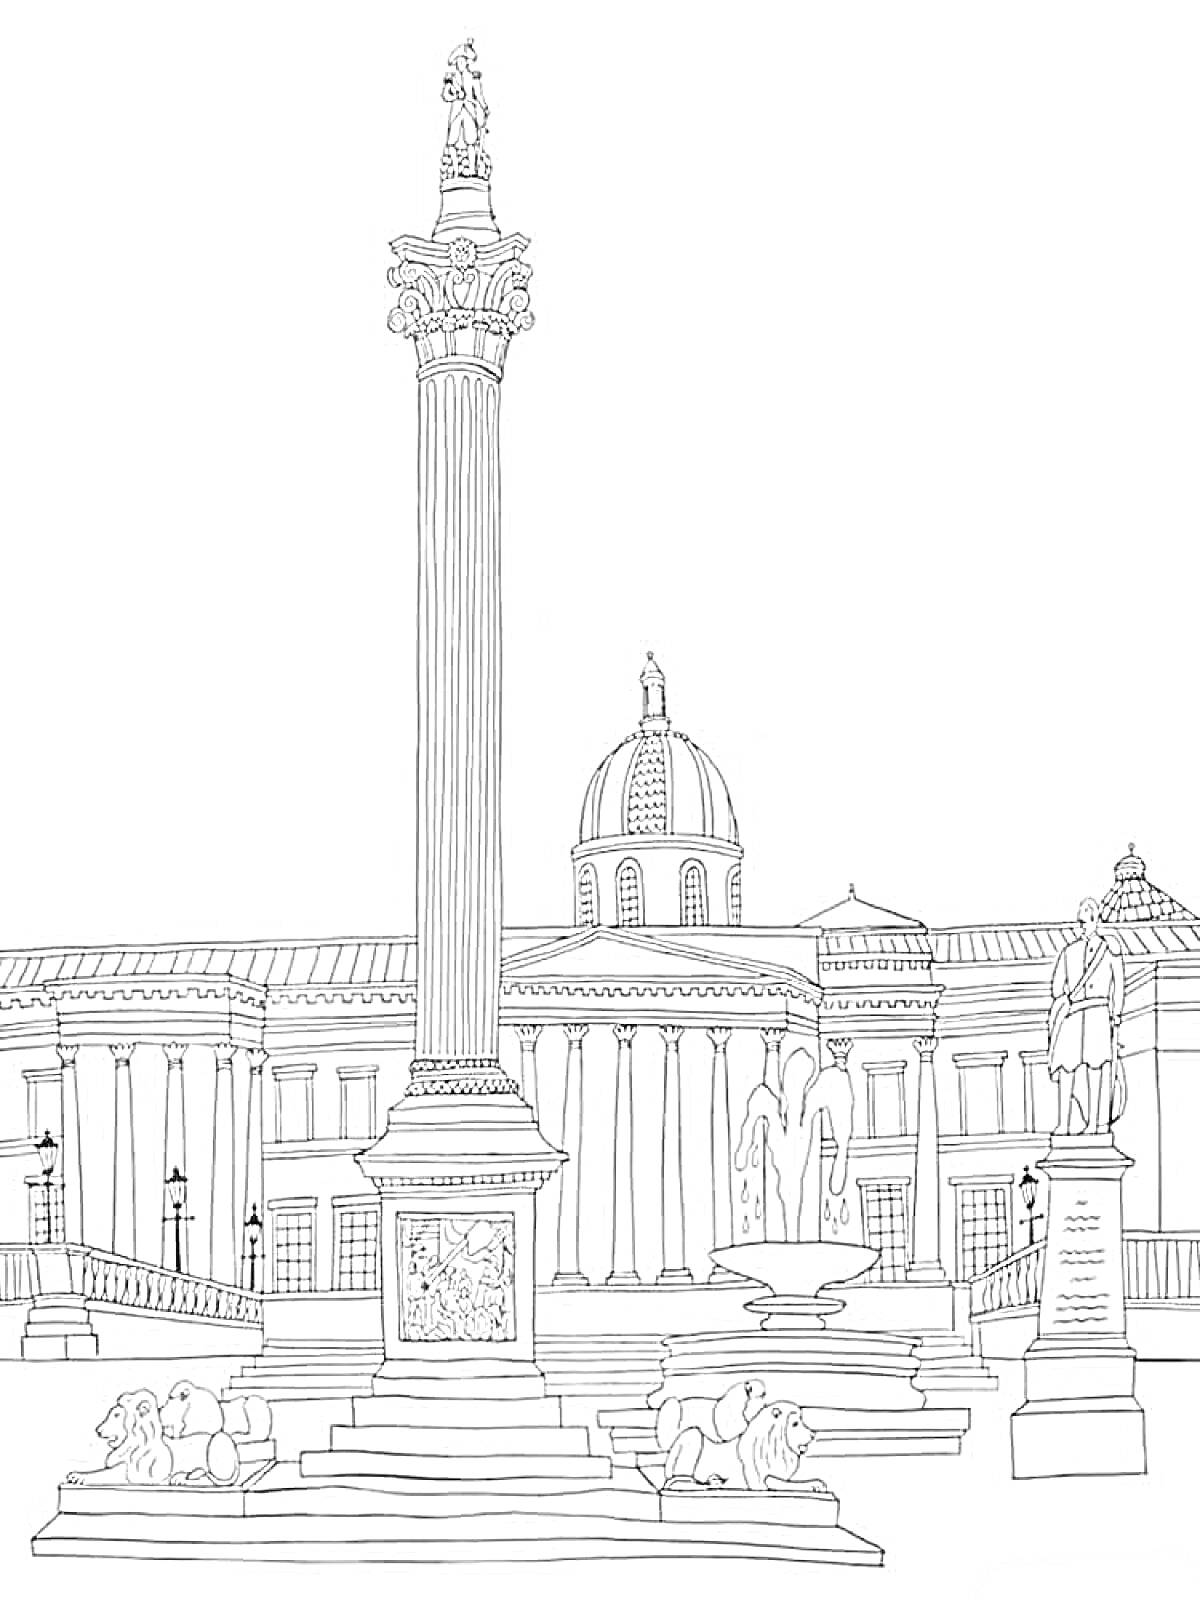 Дворцовая площадь с Александровской колонной, зданиями, скульптурами львов и архангела Гавриила